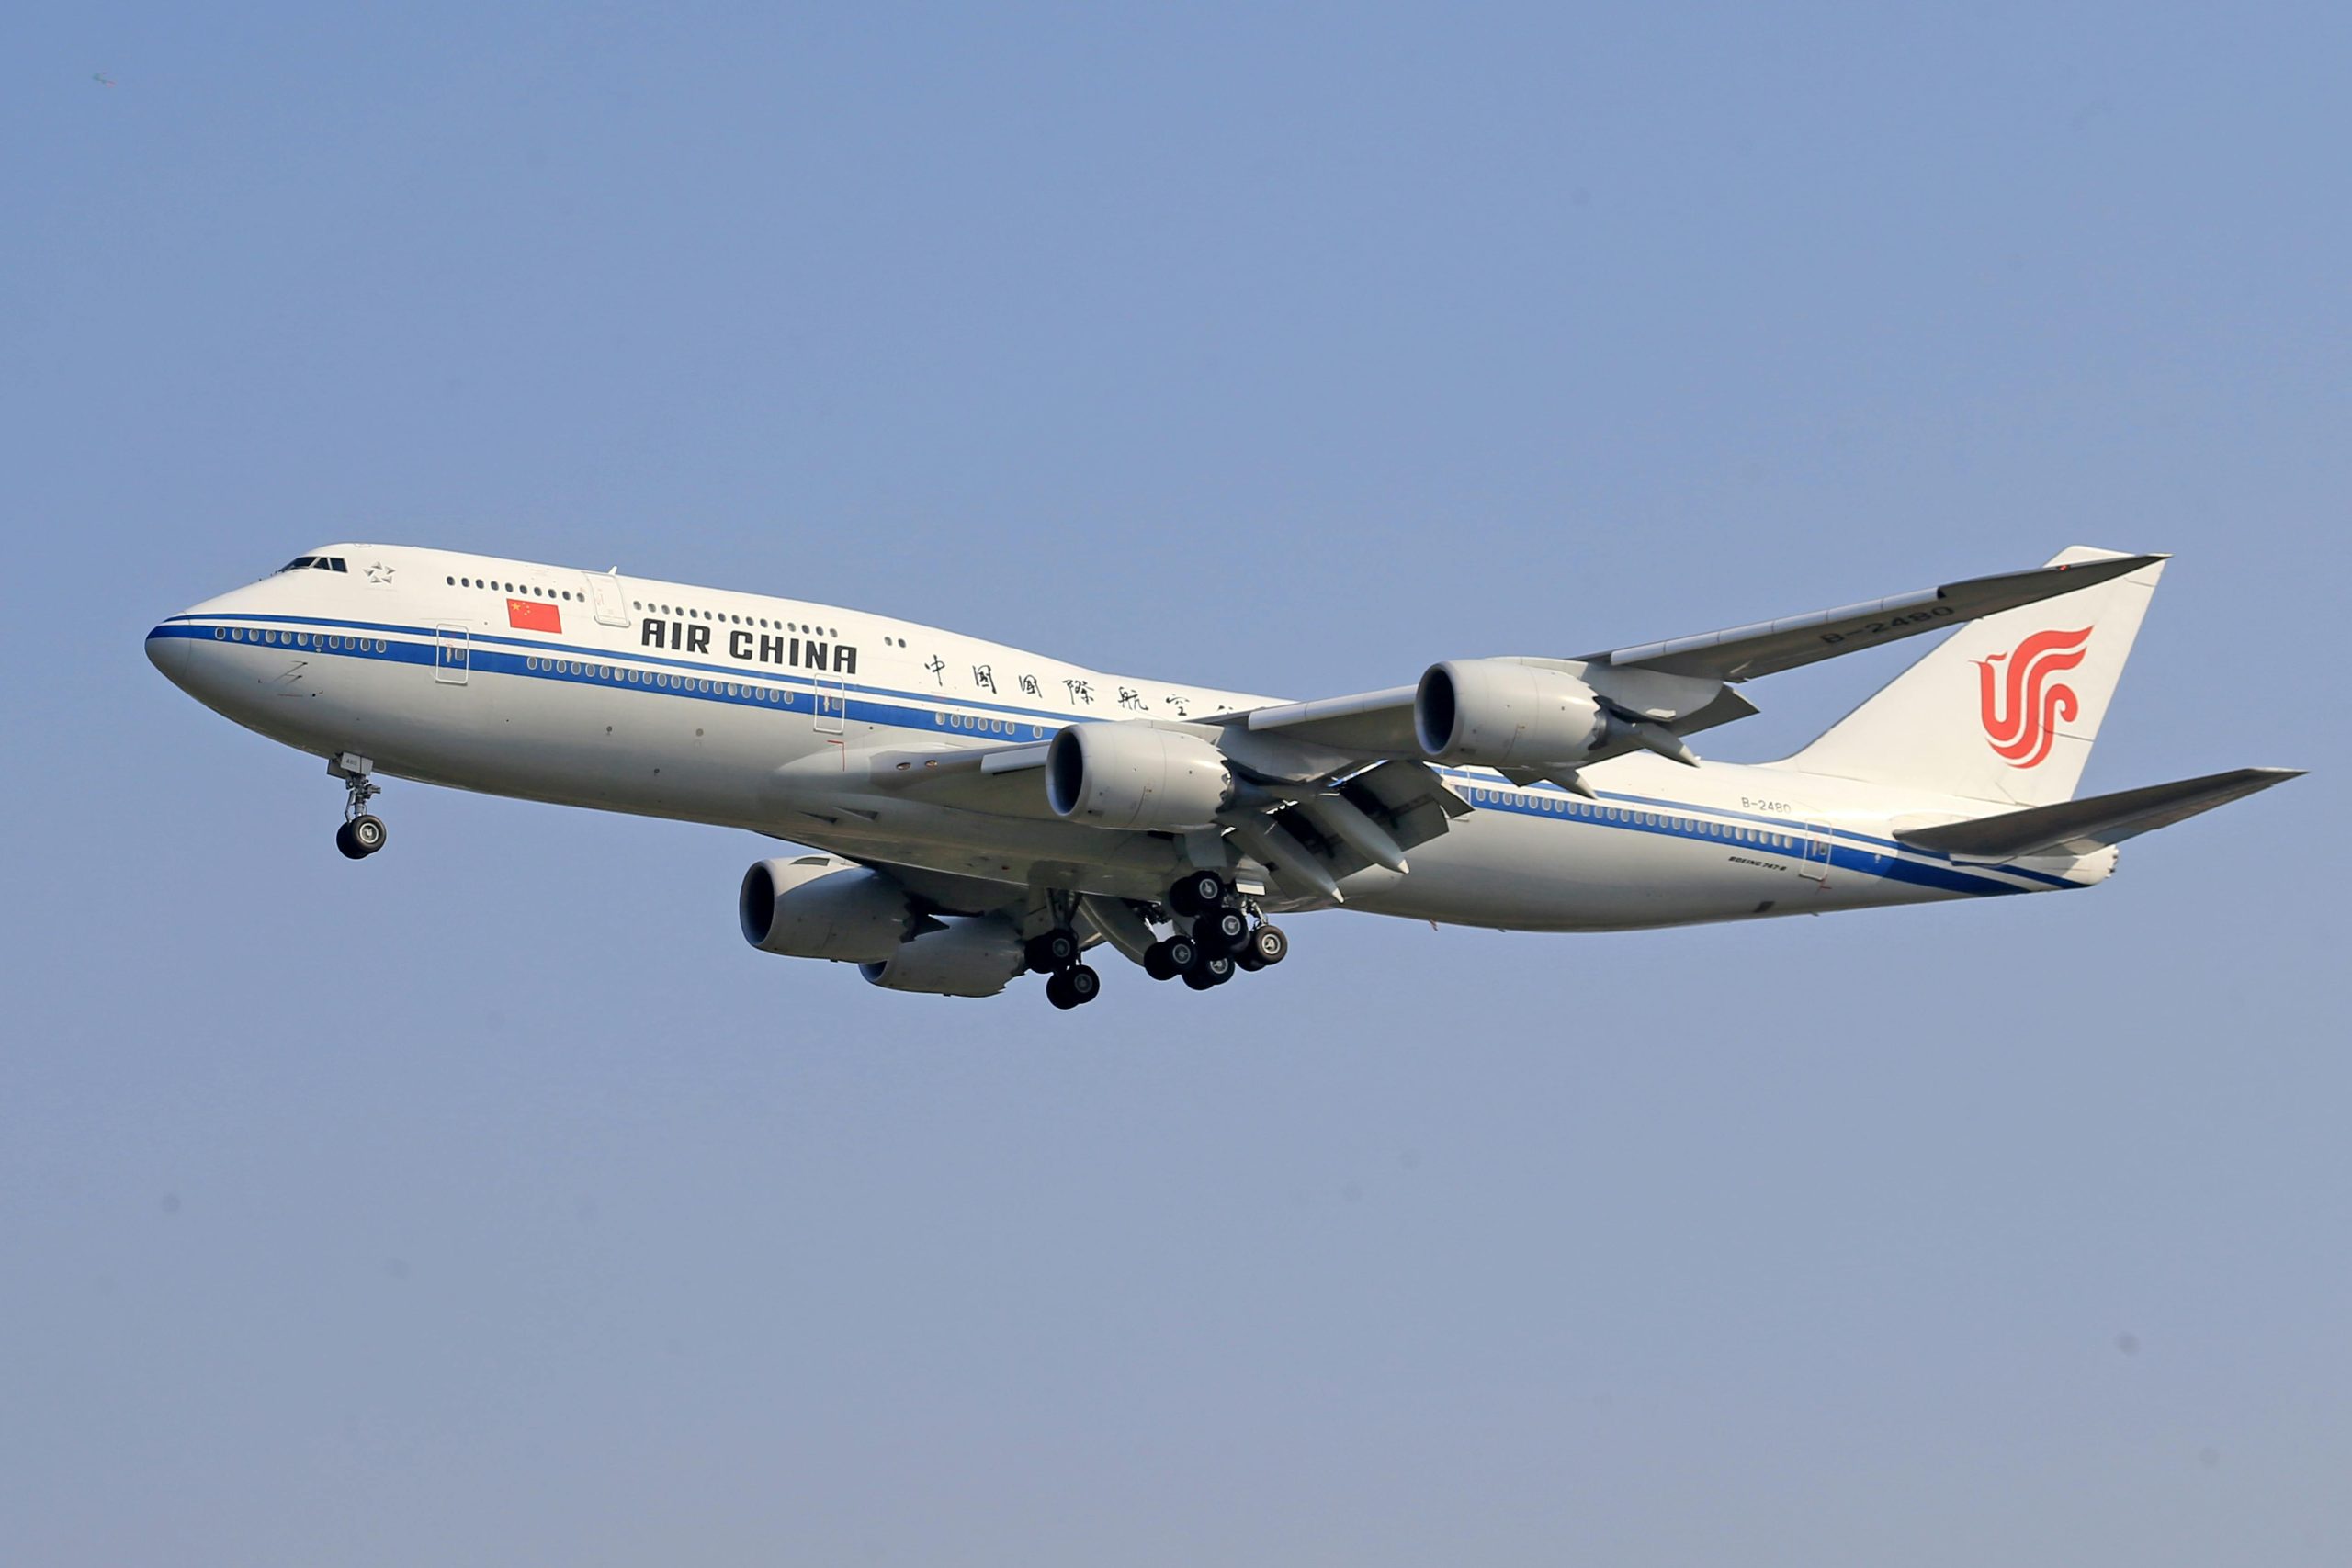 Air China ist die staatliche Fluggesellschaft der Volksrepublik China mit Sitz in Peking und Basis auf dem Flughafen Peking. Sie ist im Shanghai Stock Exchange 50 Index gelistet und Mitglied der Luftfahrtallianz Star Alliance.